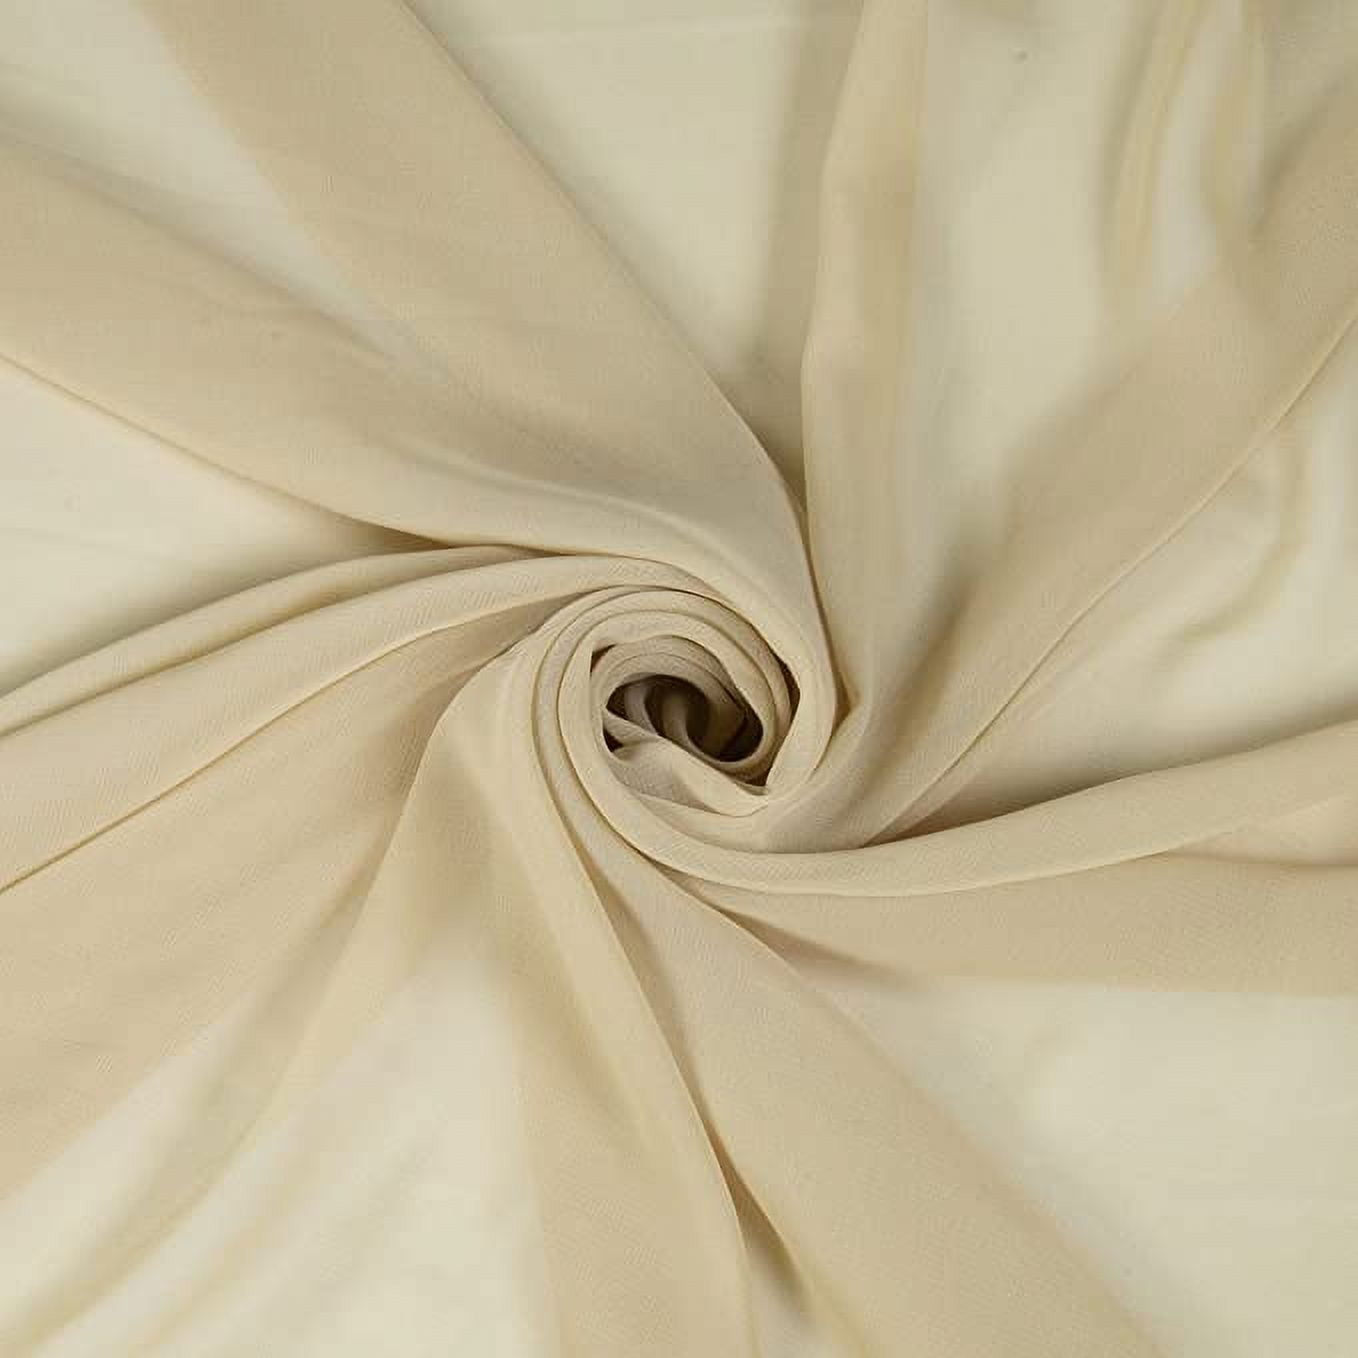 Chiffon Fabric White, by the yard